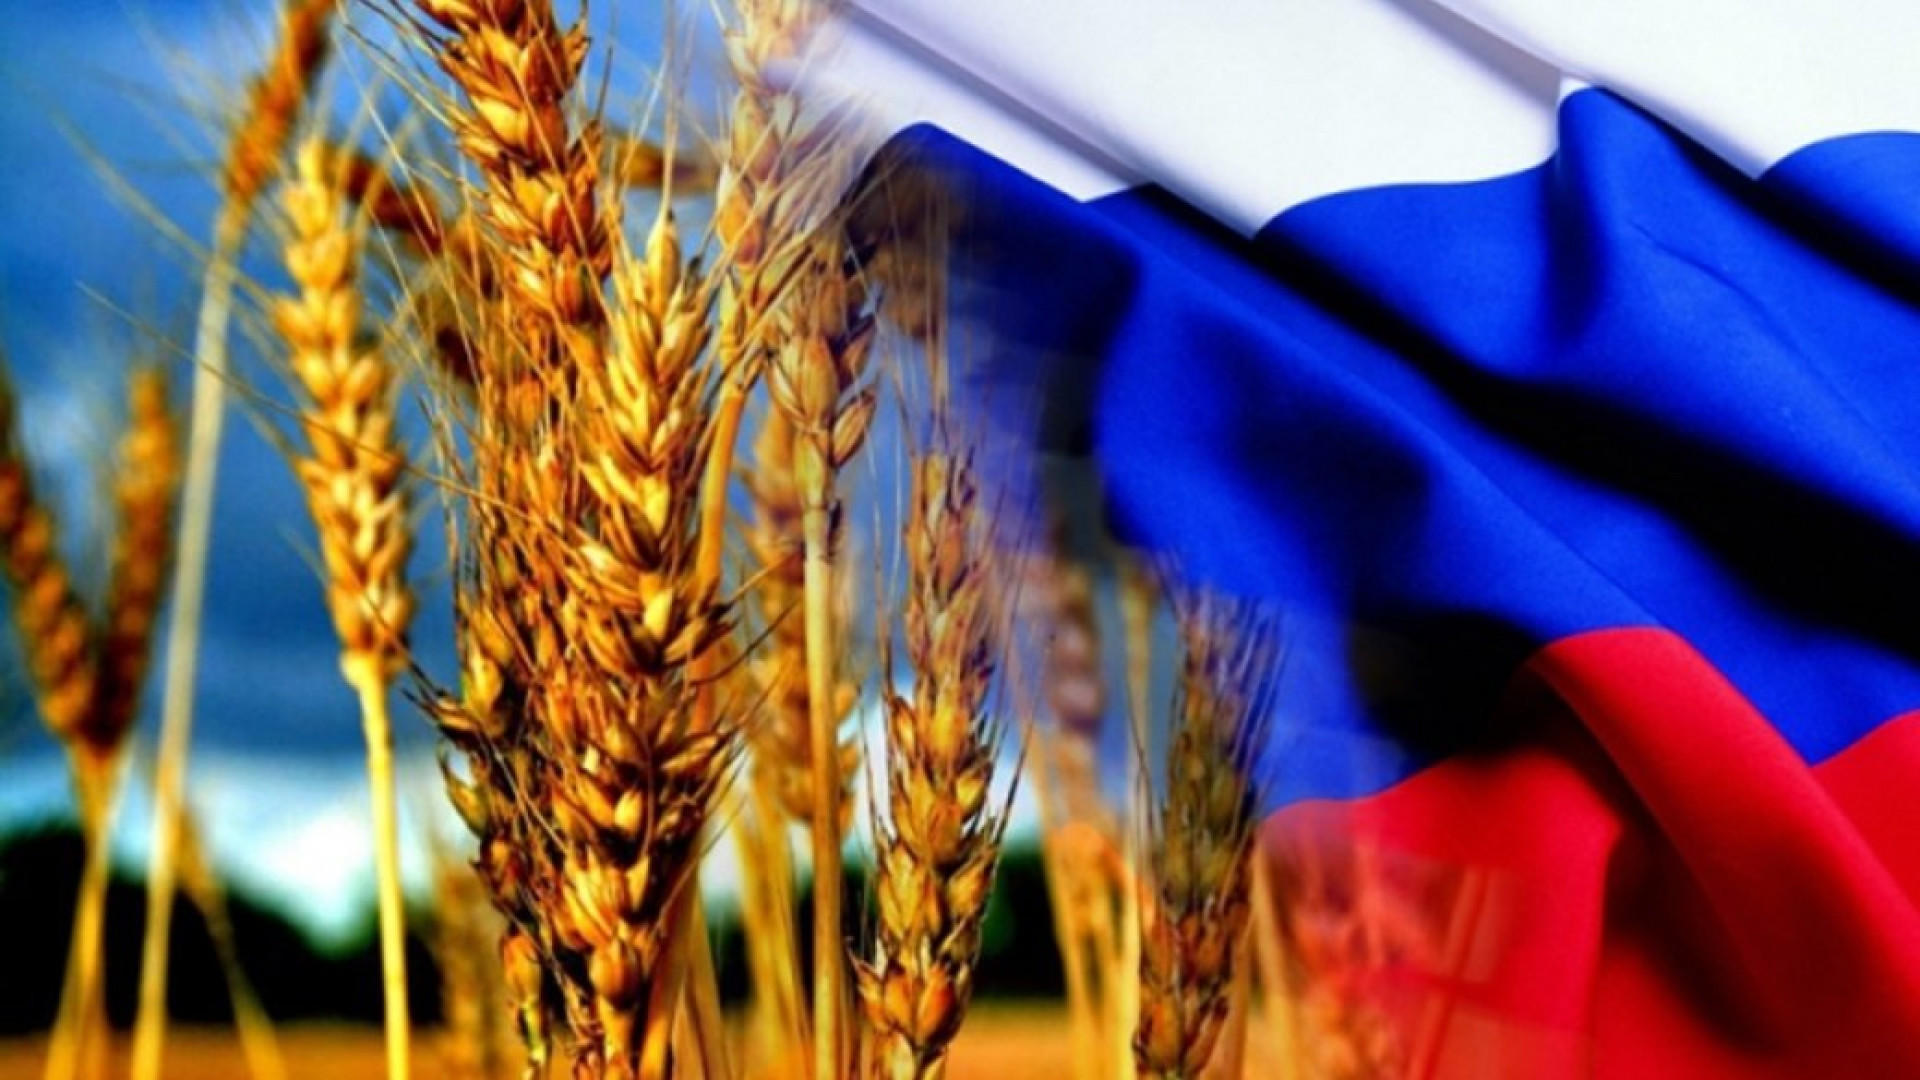 Поздравление Путина С Днем Сельского Хозяйства 2021